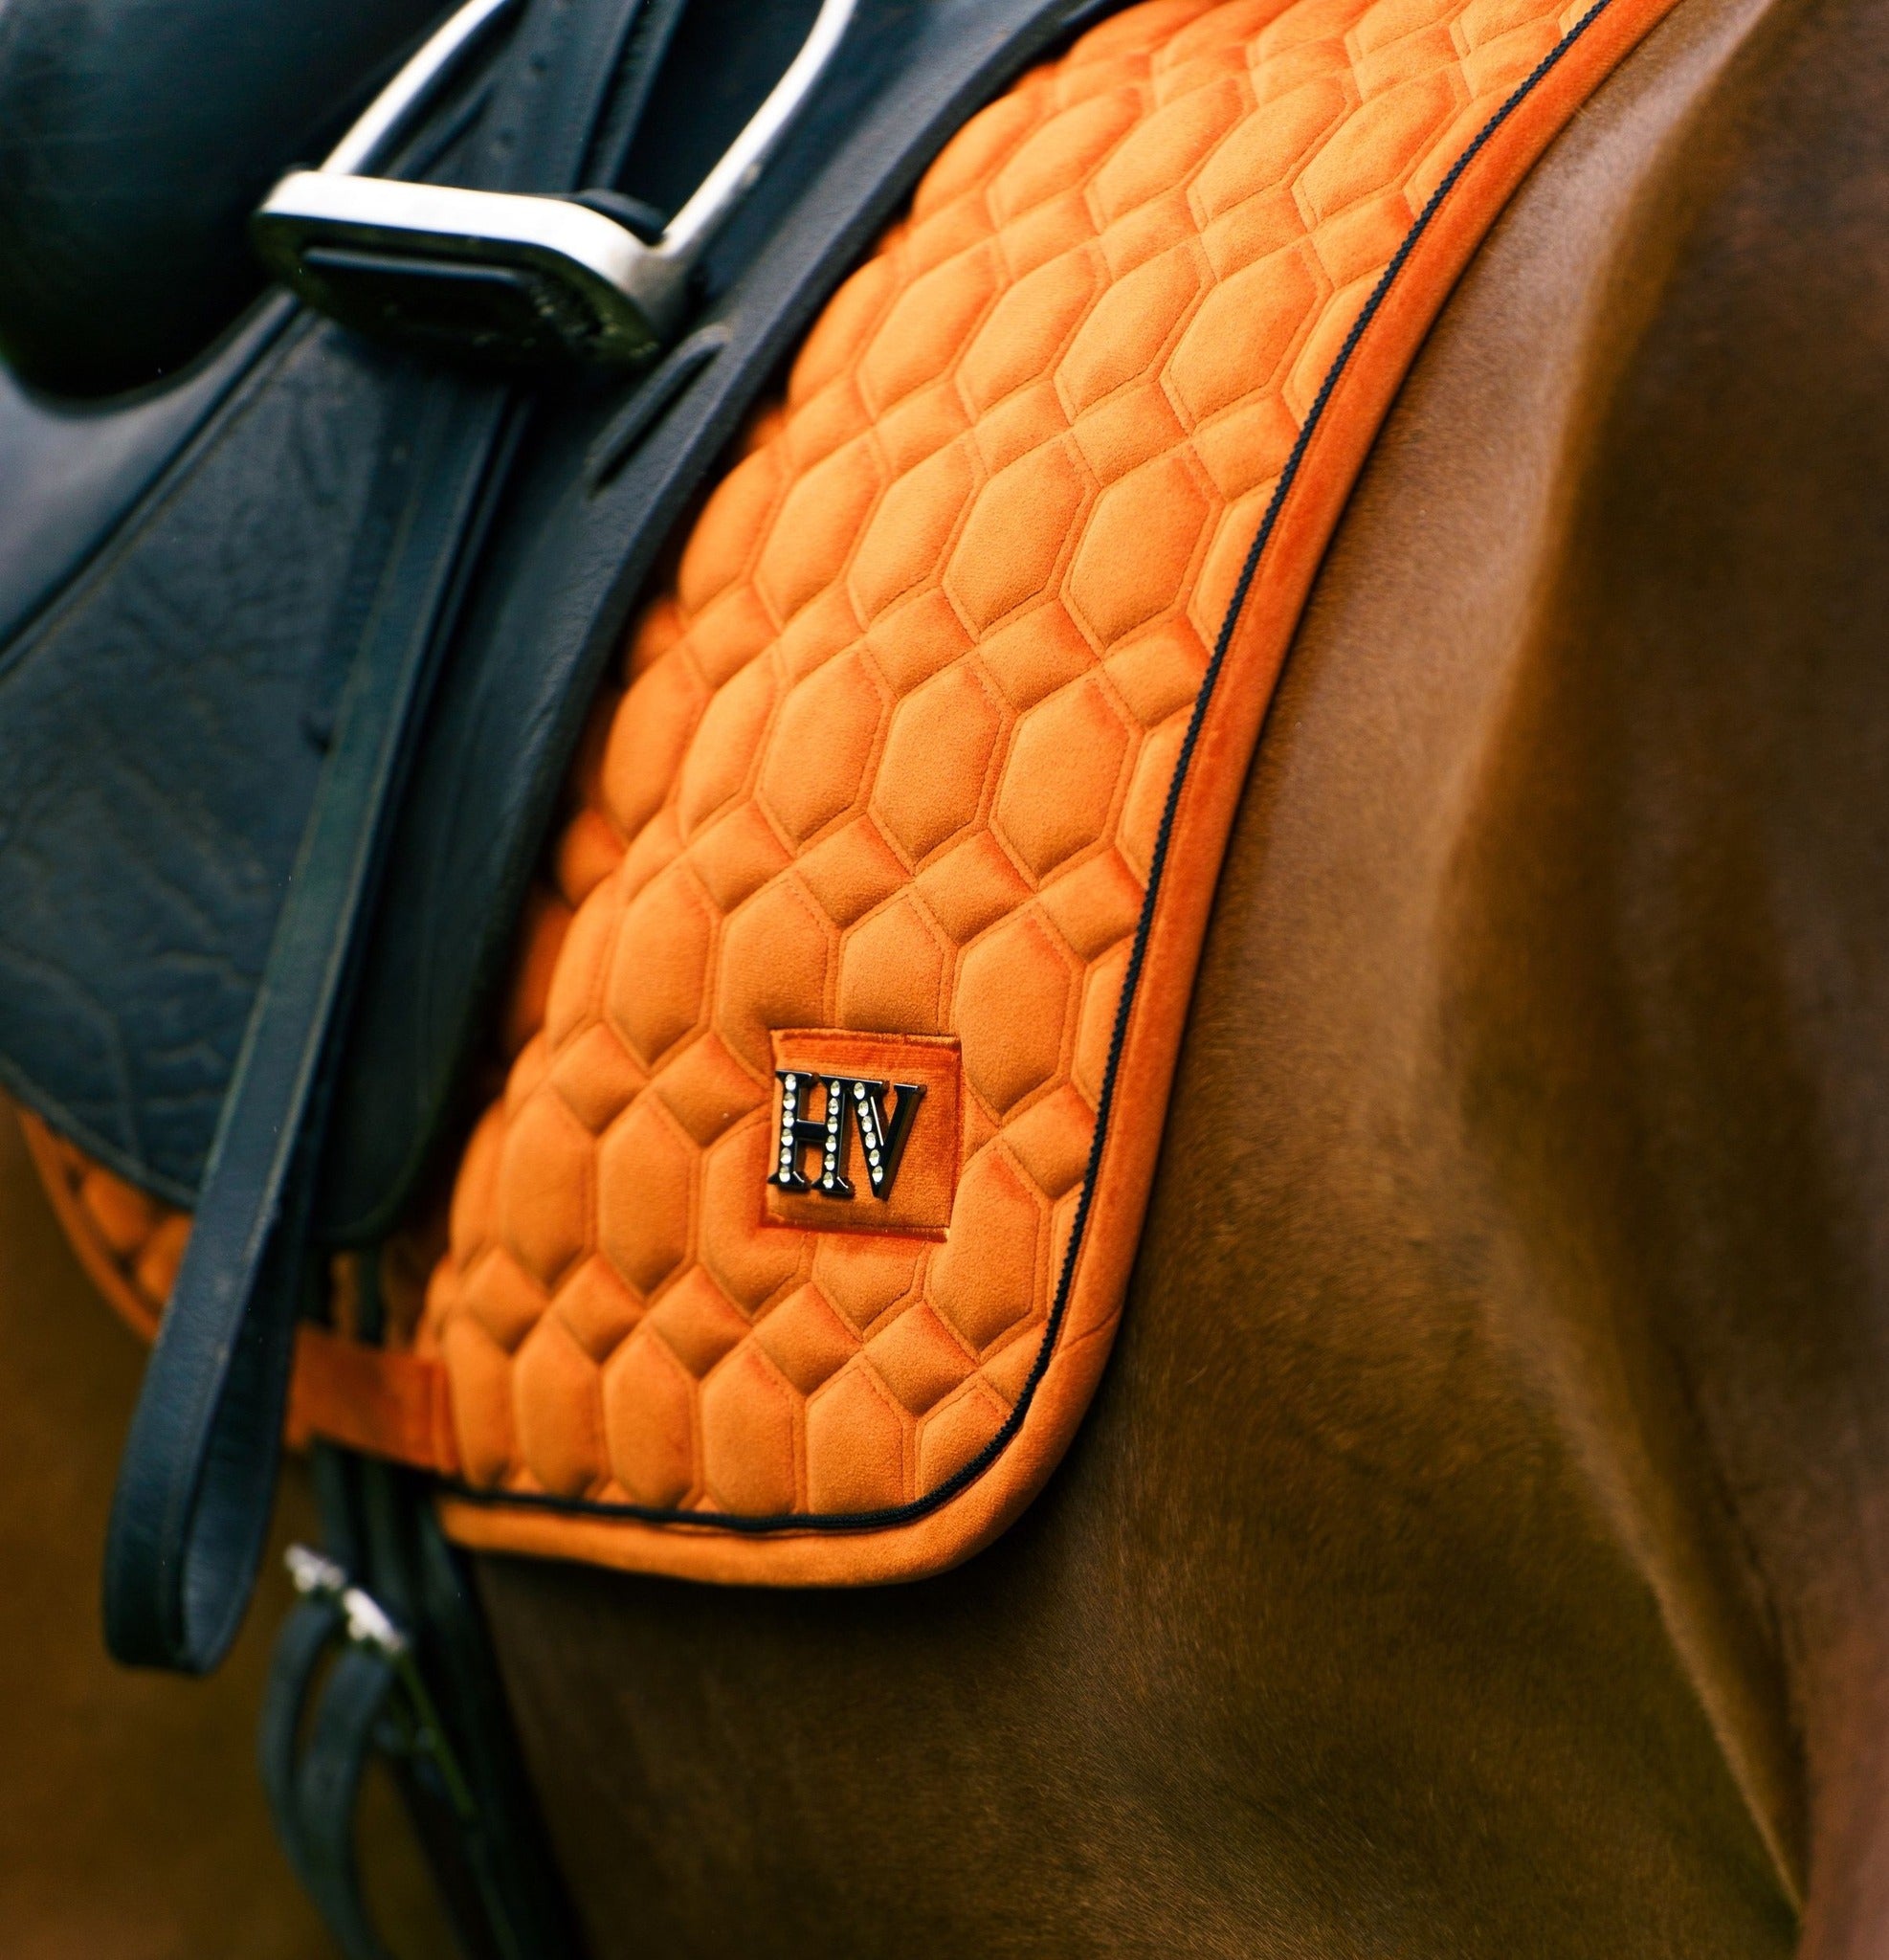 Pferde Dressurschabracke "Dorian" von HV POLO in der Farbe Orange mit der Artikelnummer 0802093510-3087. Diese Dressurschabracke wurde speziell entwickelt, um Ihrem Pferd während der Dressur einen eleganten und komfortablen Sitz zu bieten. Sie können diese Pferde Dressurschabracke auf der Website www.hotti24.de erwerben